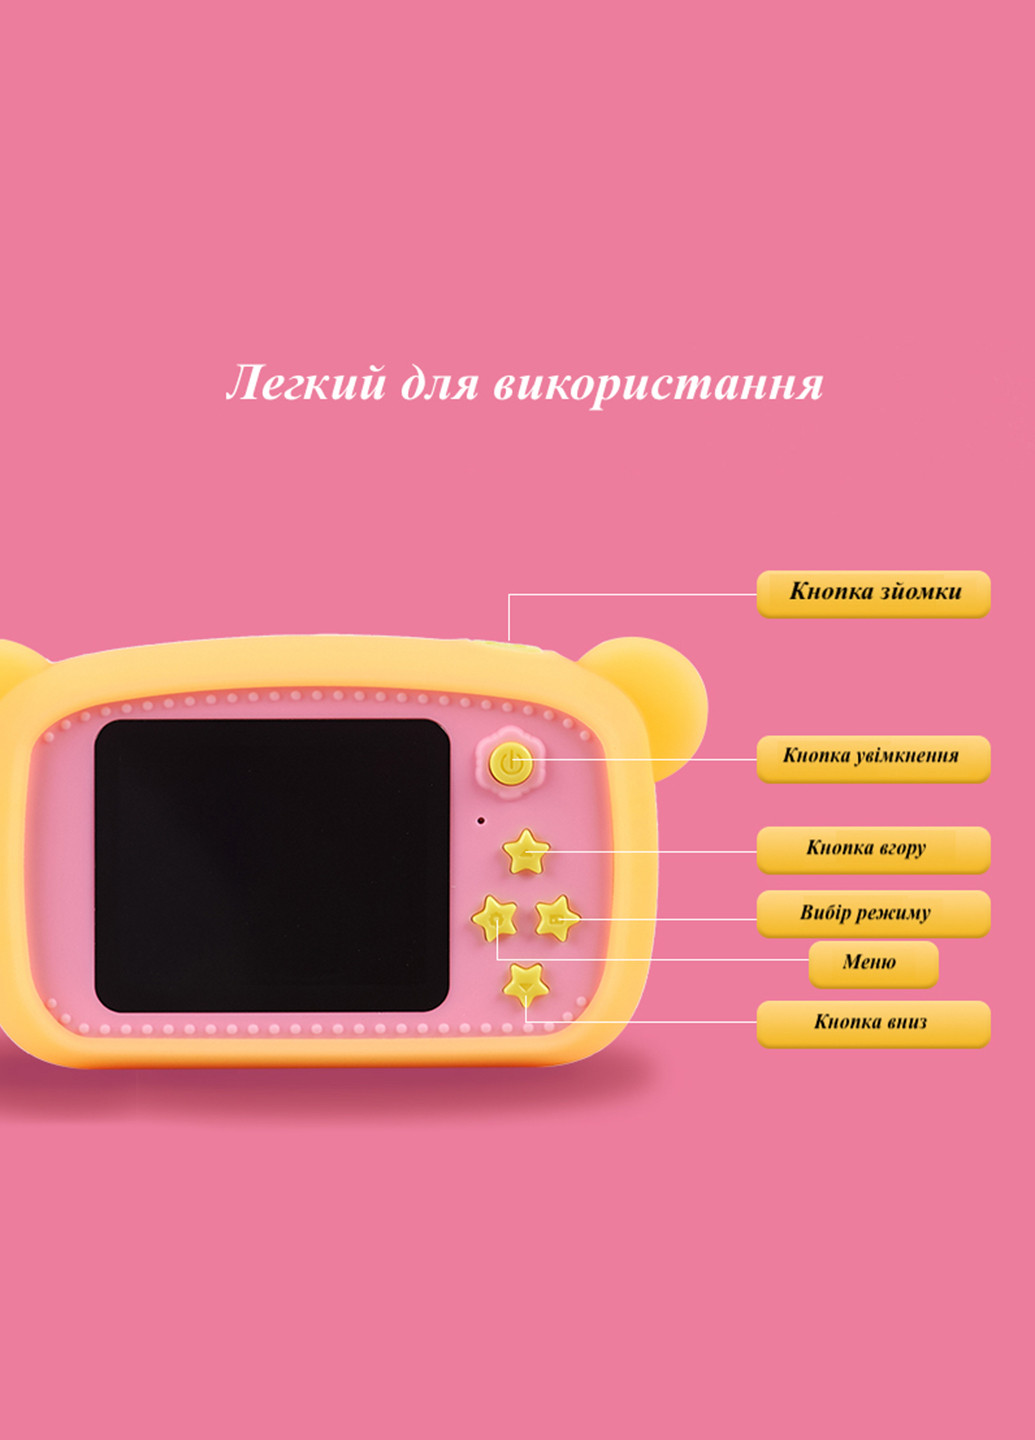 Цифровой детский фотоаппарат KVR-100 Bee Dual Lens оранжевый () XoKo kvr-100-or (171738975)